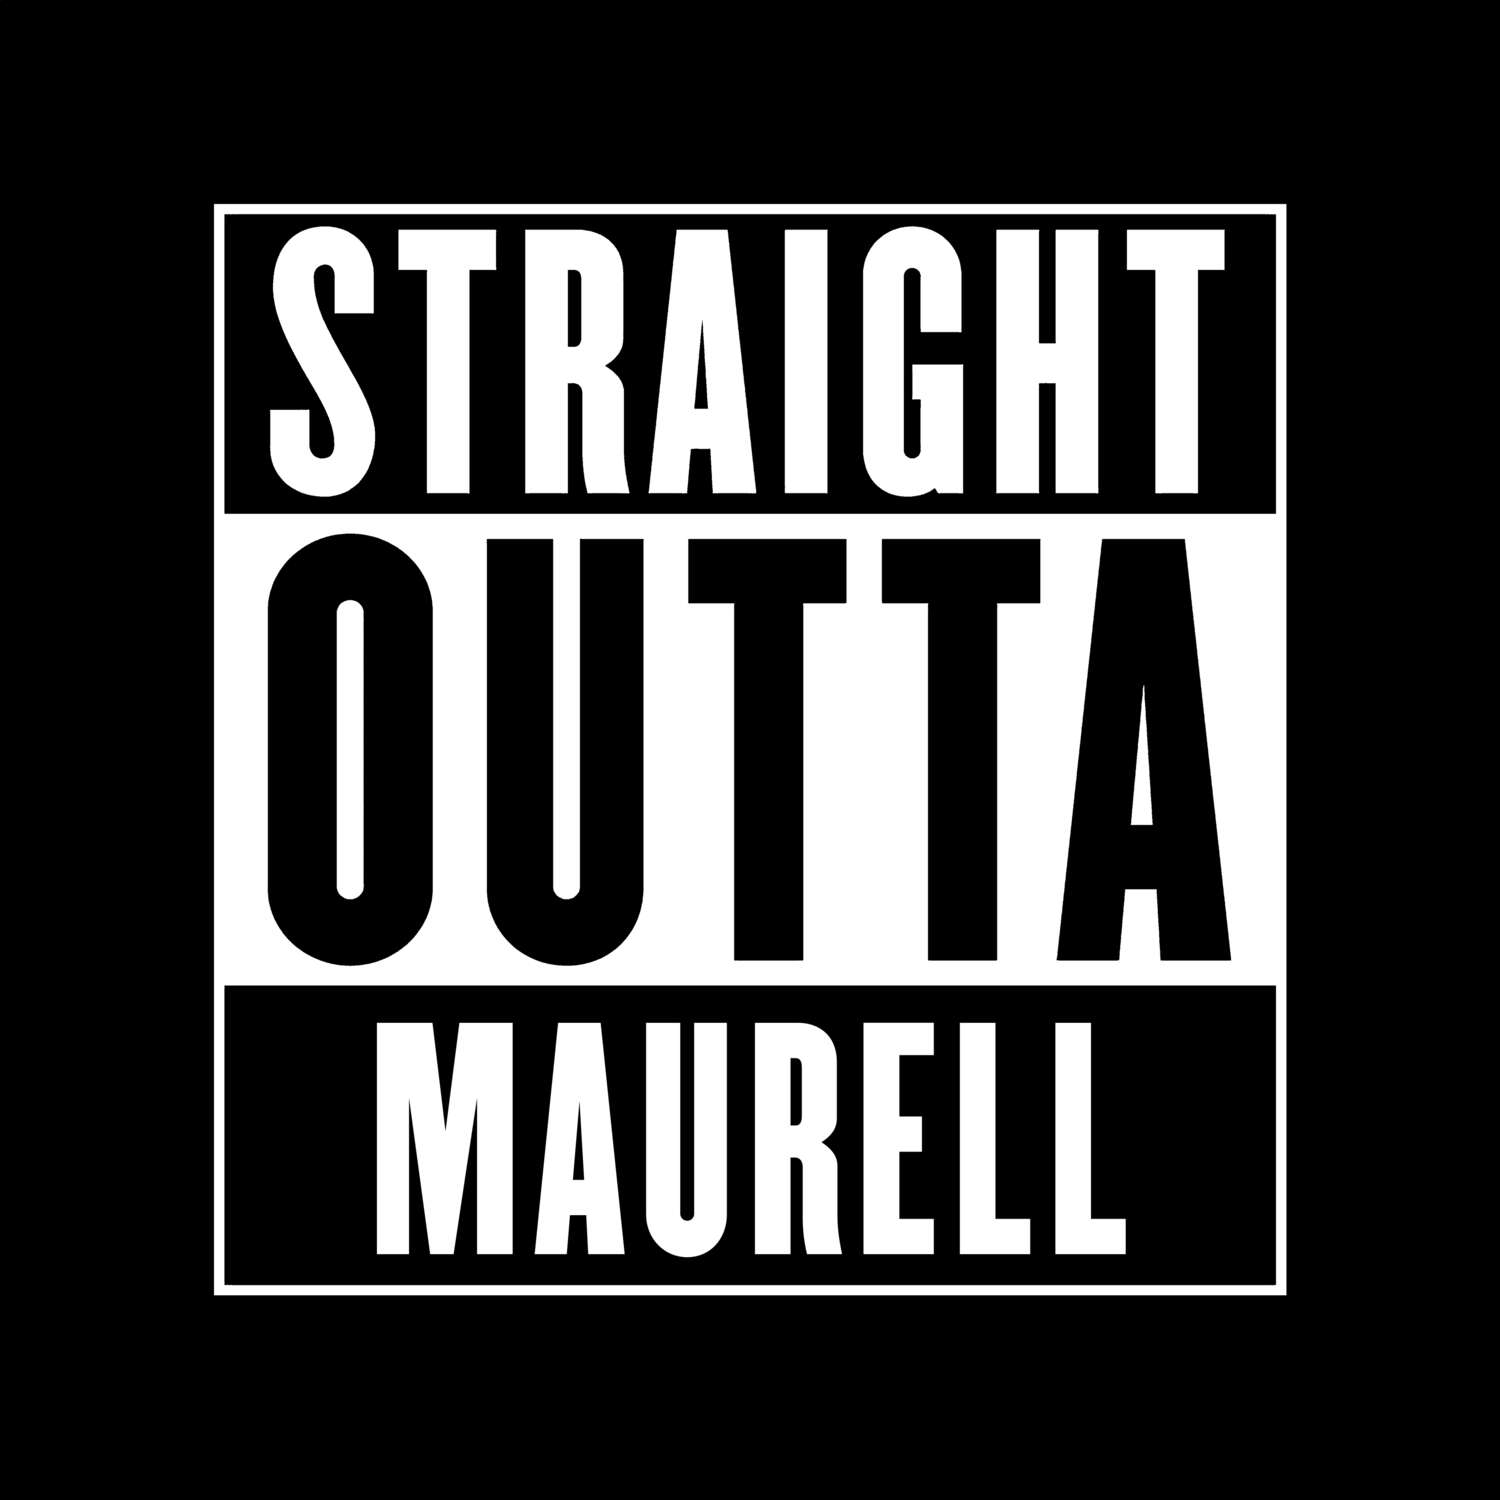 Maurell T-Shirt »Straight Outta«